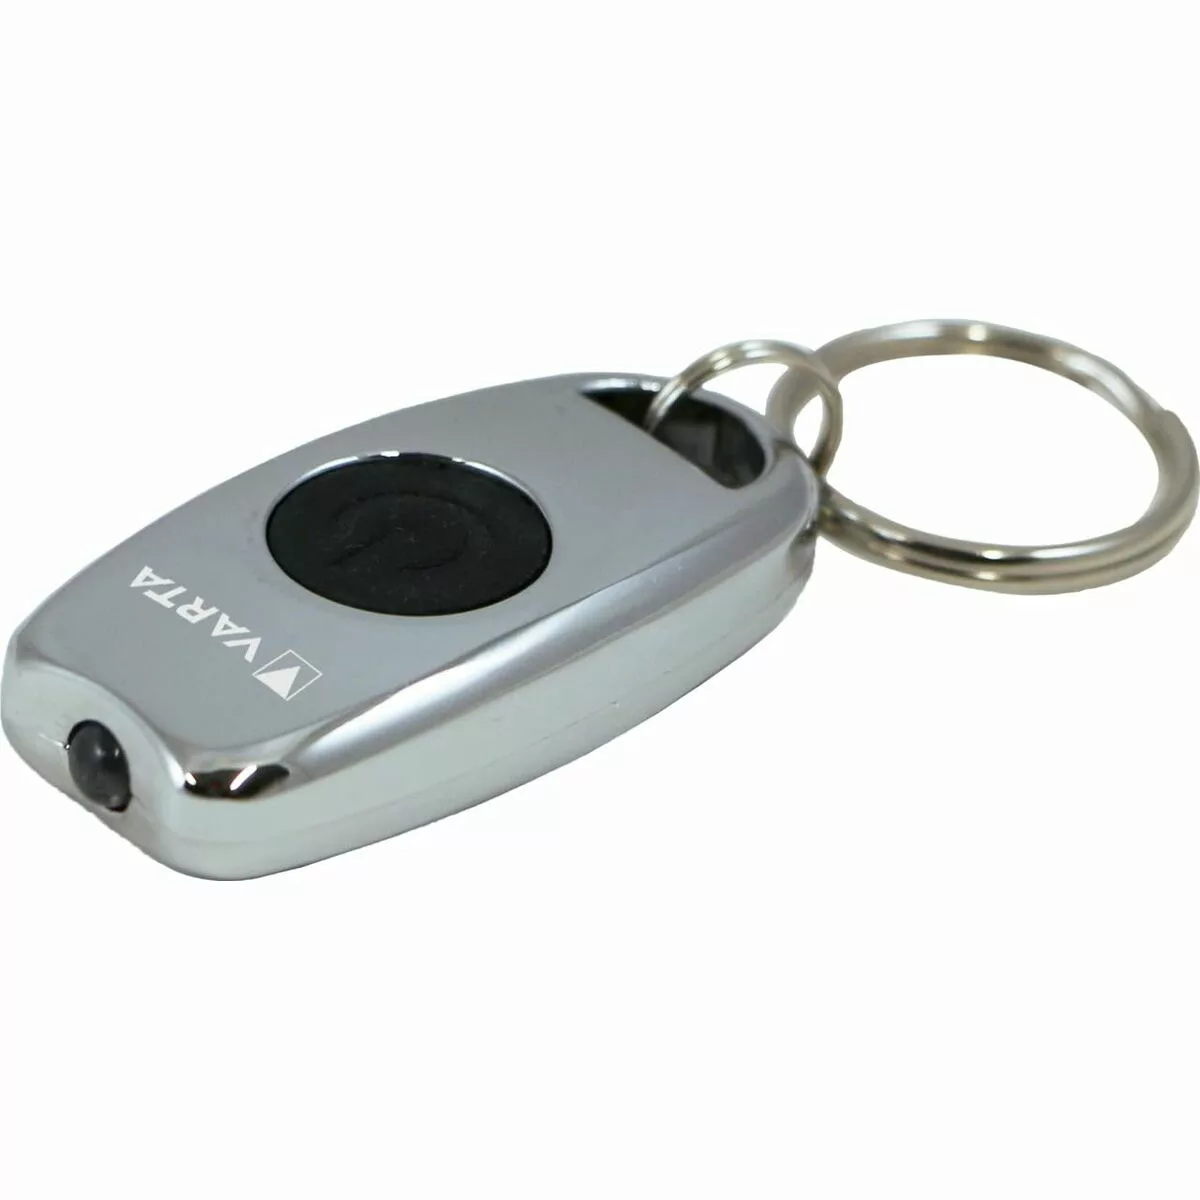 Schlüsselanhänger Led-taschenlampe Varta Metal Key Chain Light 15 Lm günstig online kaufen